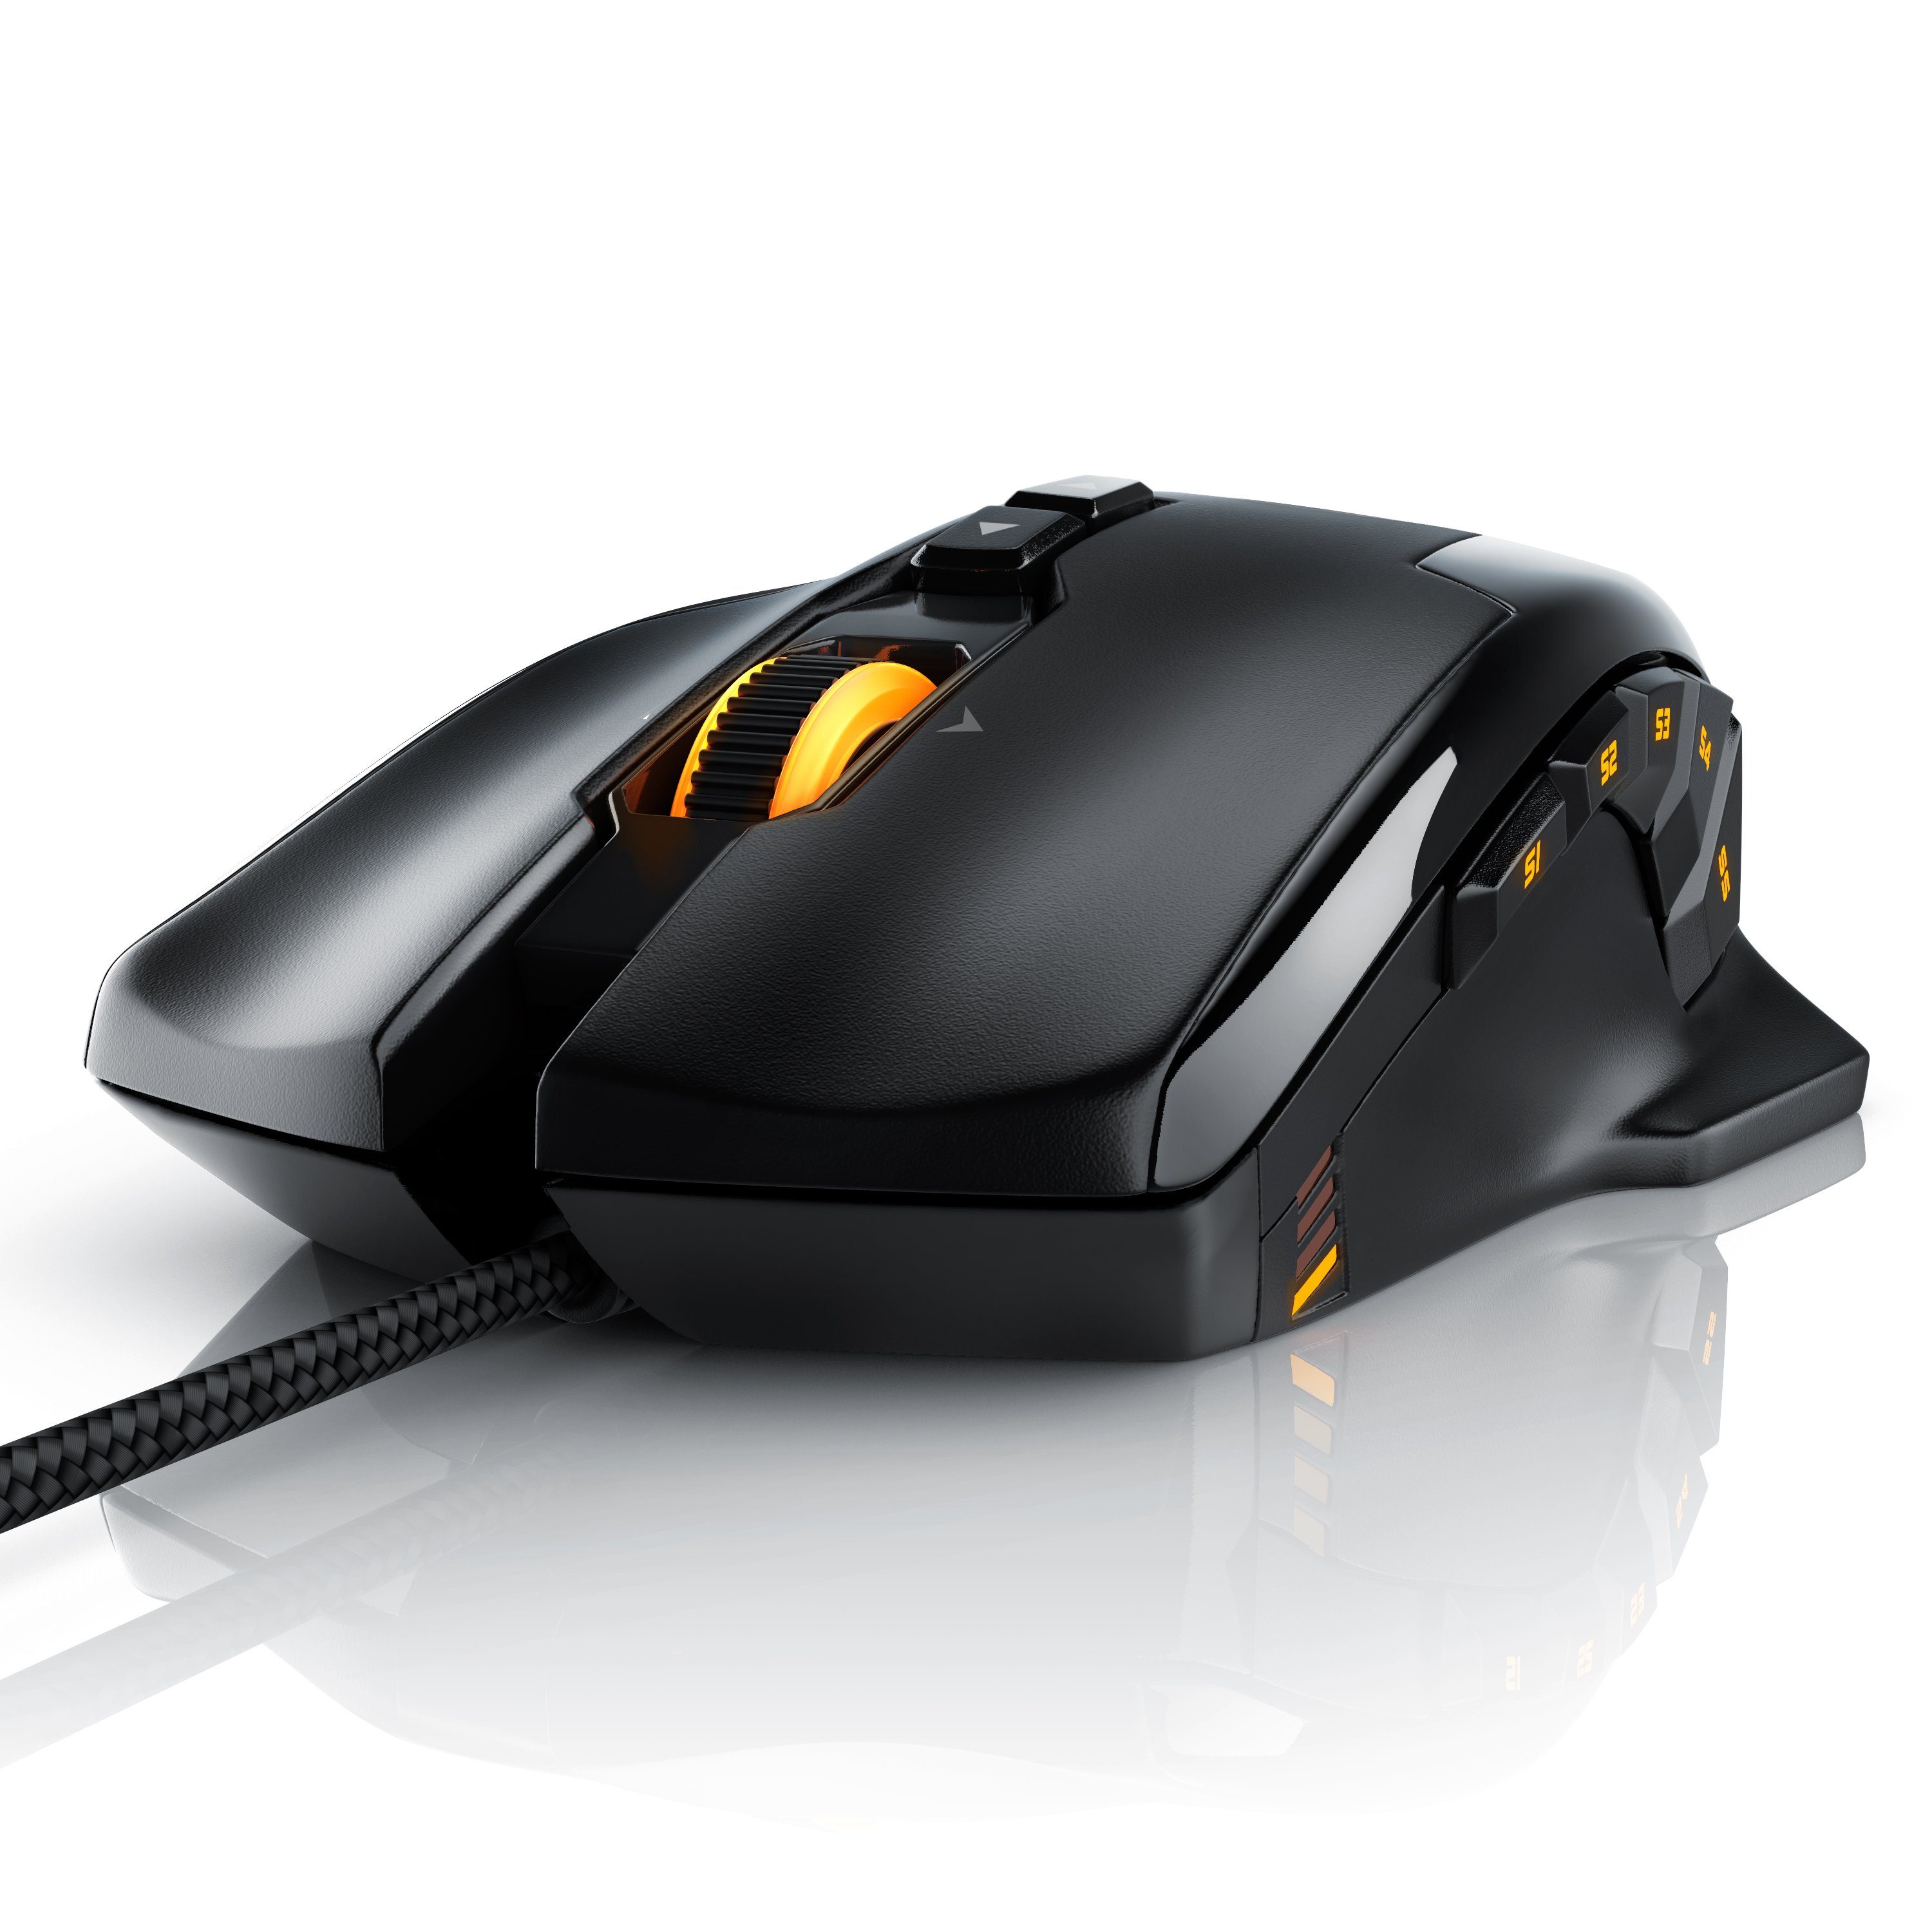 Titanwolf Gaming-Maus (kabelgebunden, 1000 dpi, 10800dpi, LEDs, mit Gaming Laser Mouse RGB USB Gewichts-Justierung)